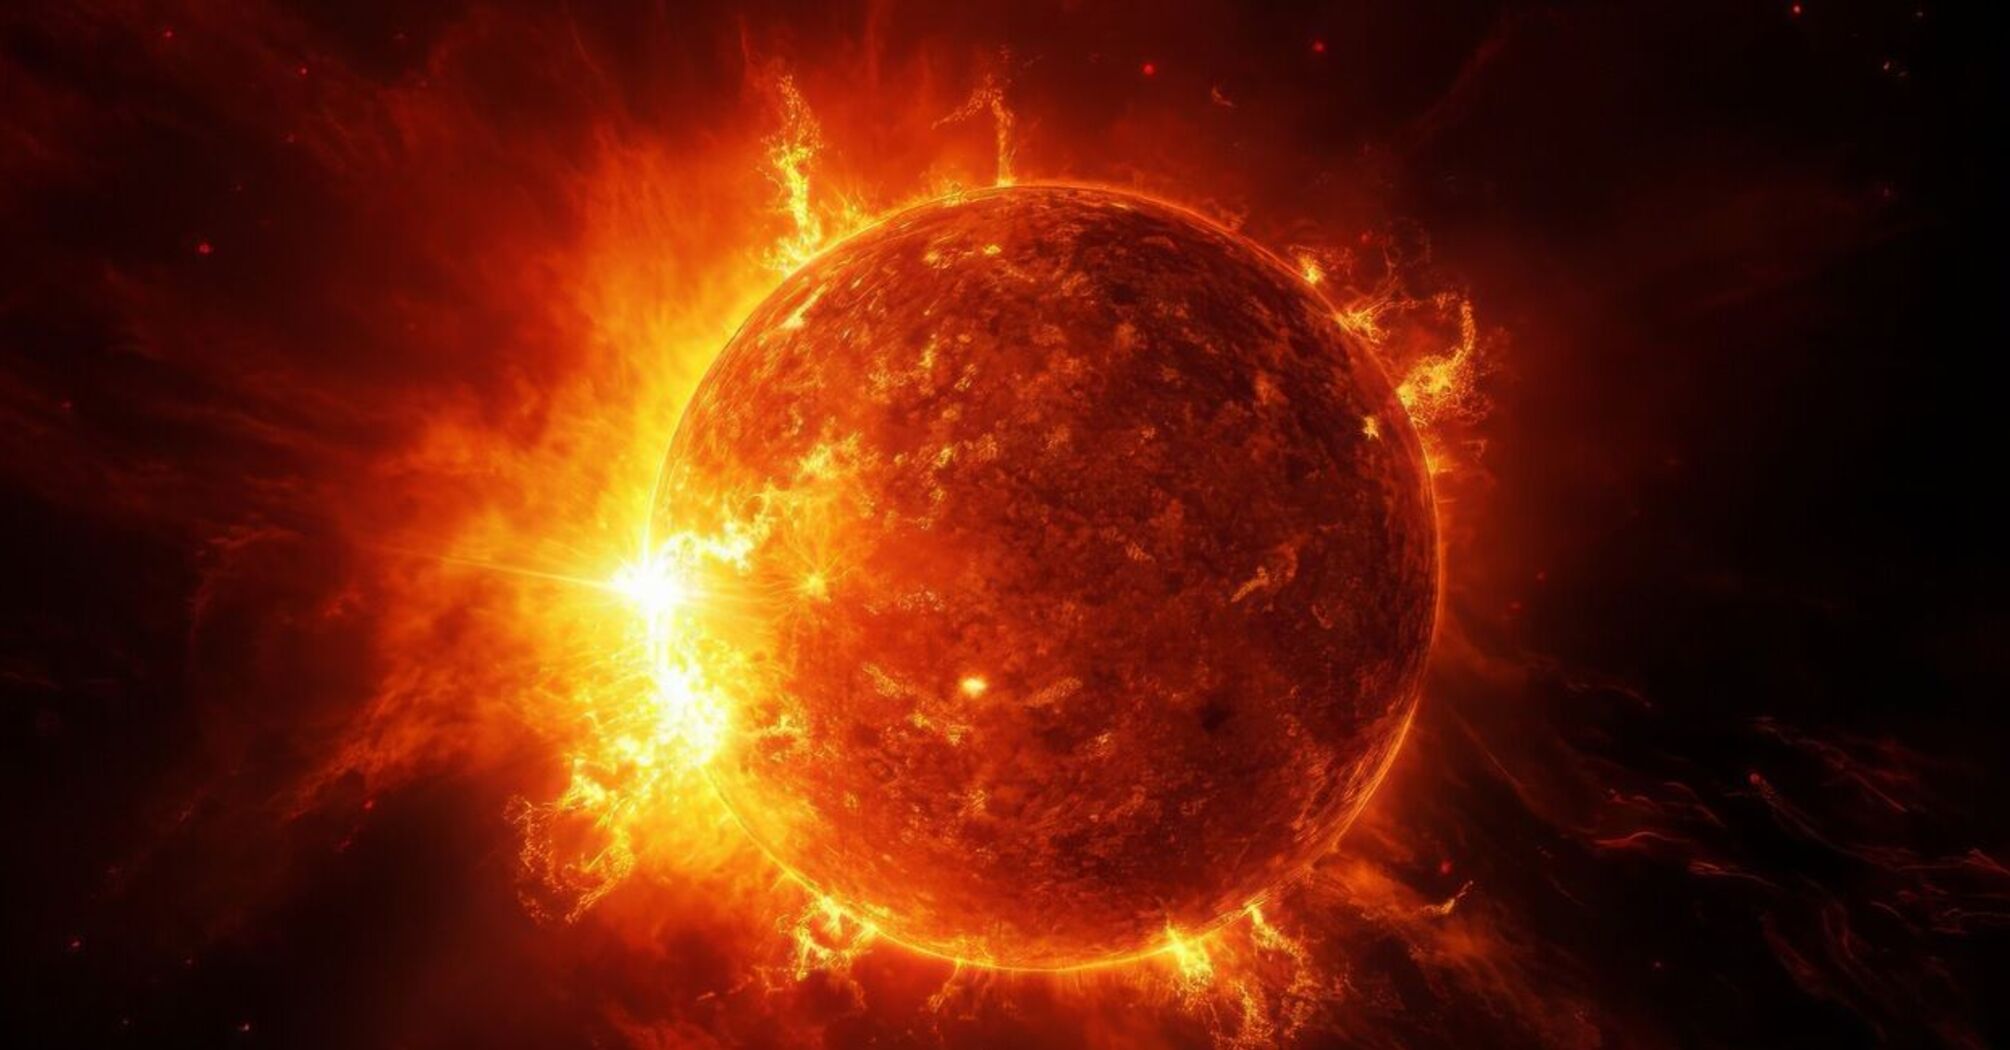 Сонце викинуло до 20 потужних спалахів: чи є небезпека для мешканців Землі